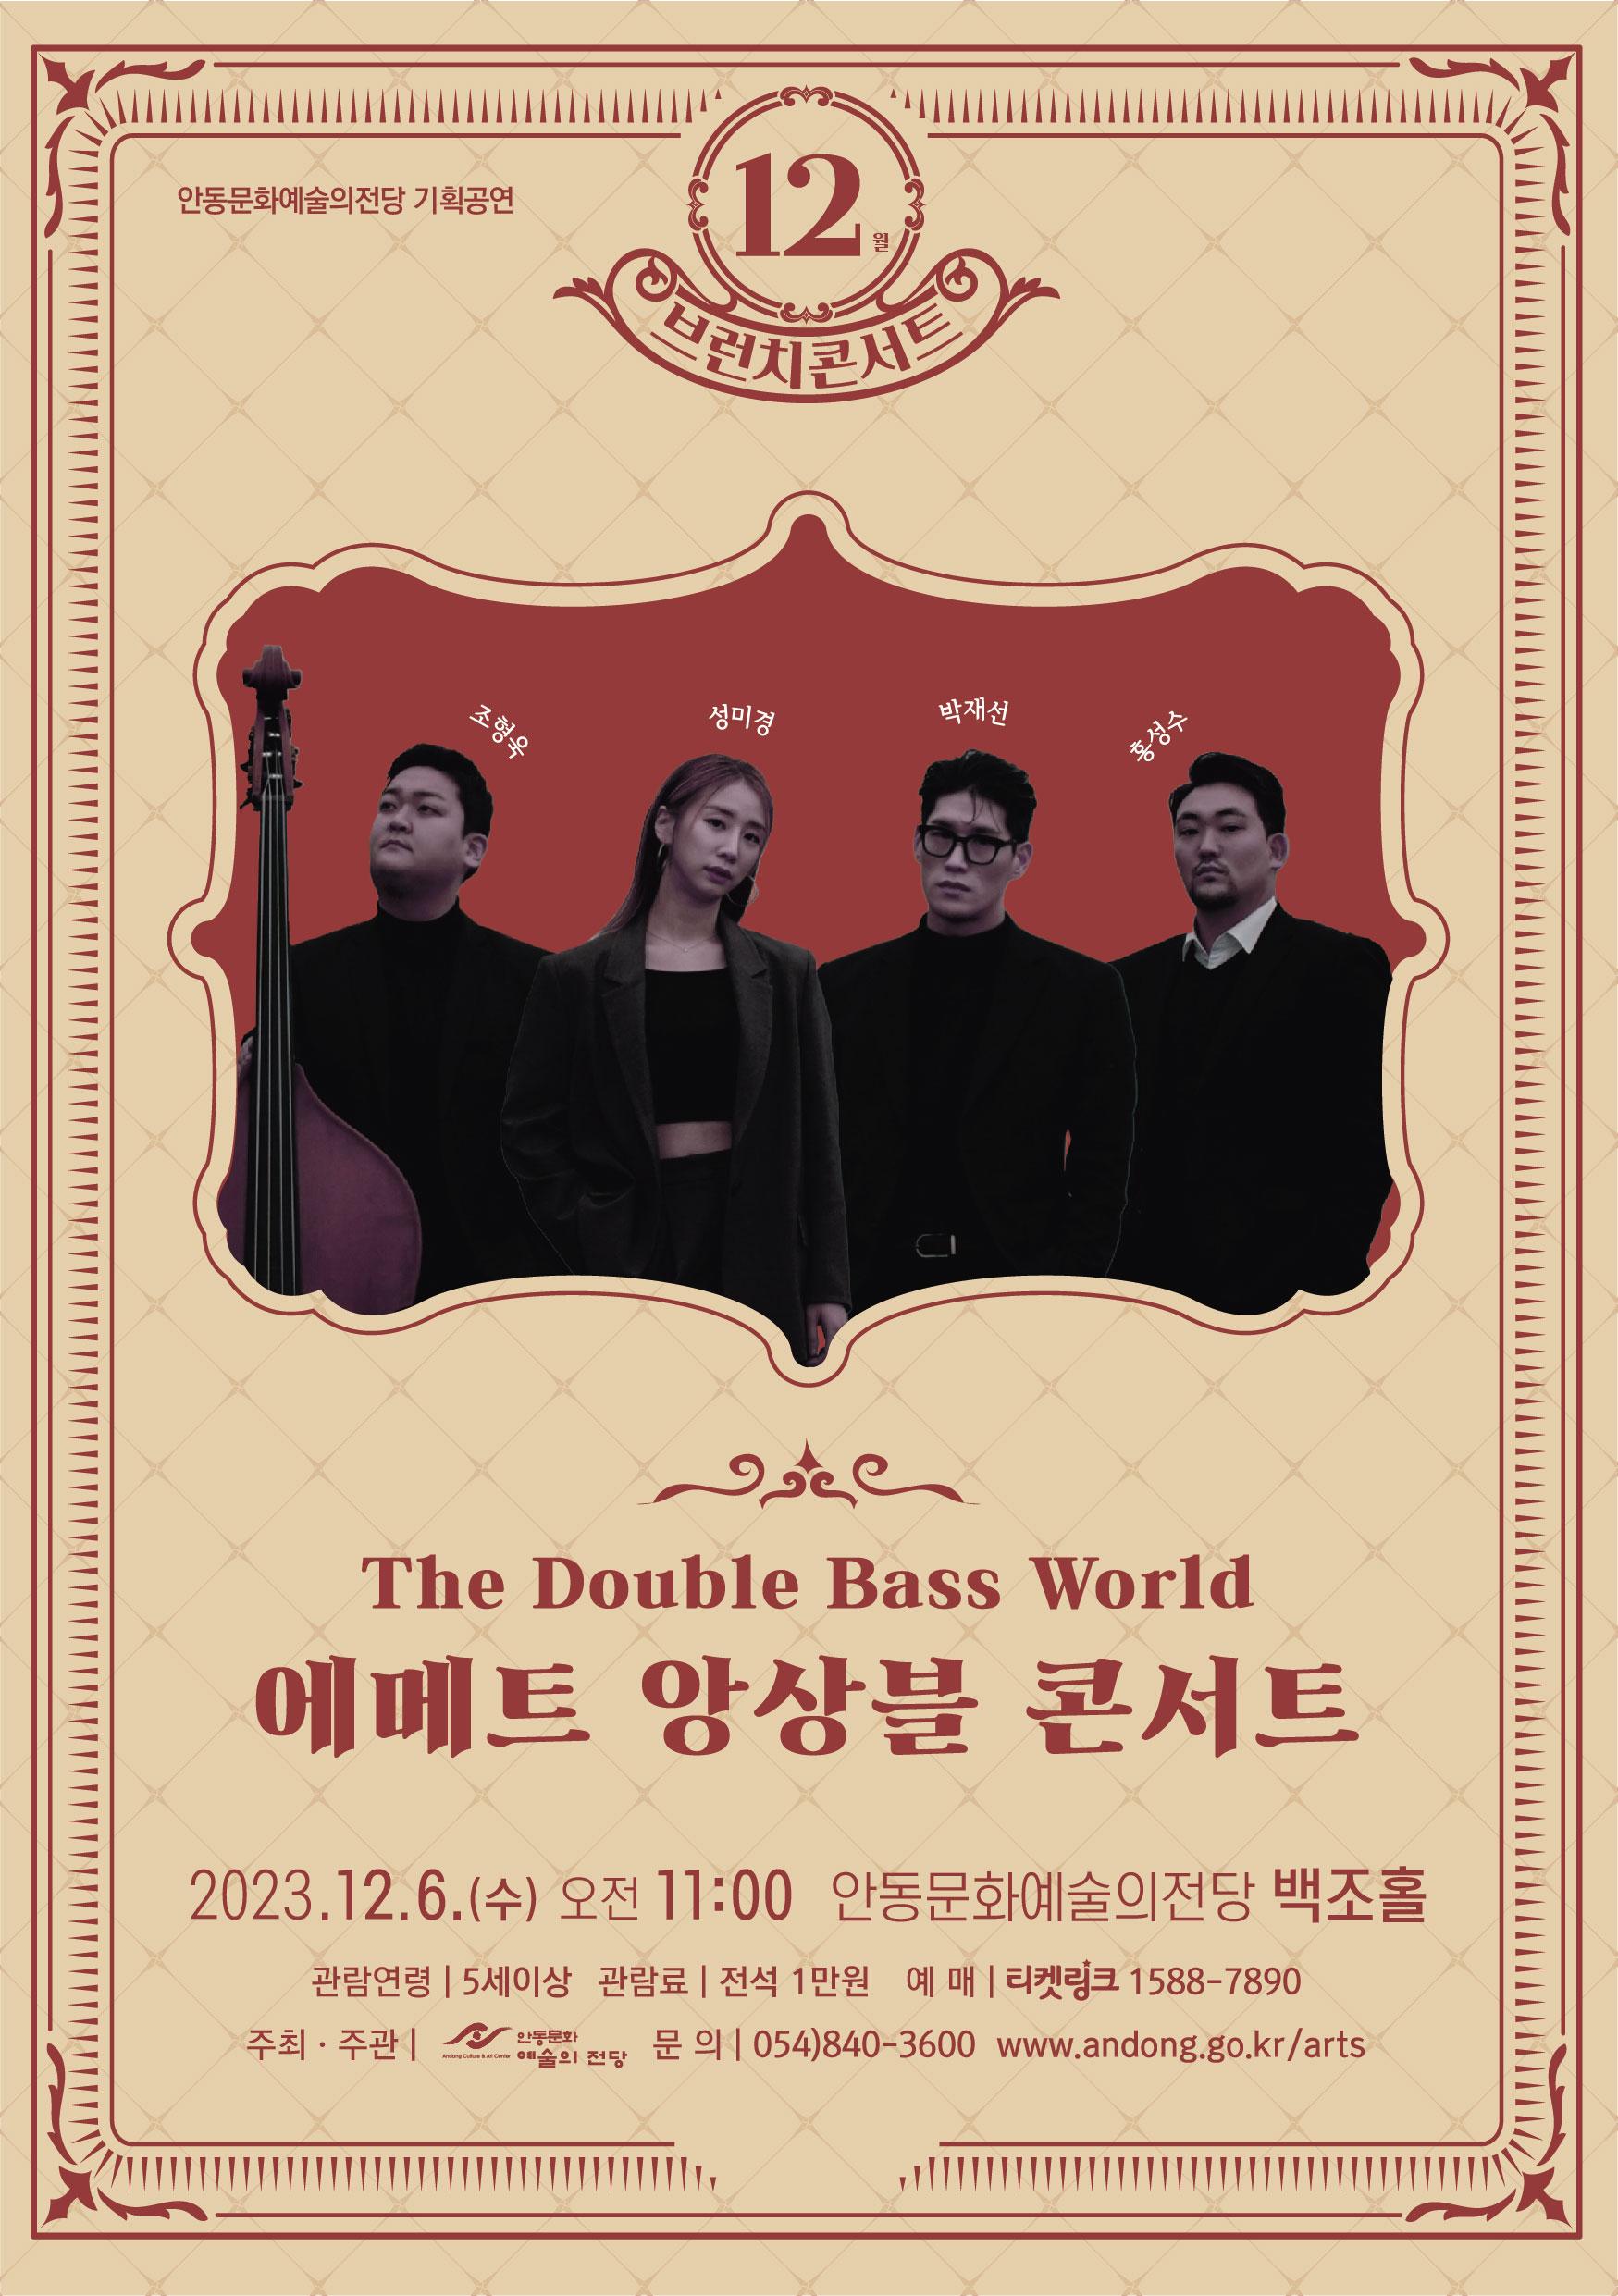 Plakat für das Brunchkonzert „The Double Bass World“ in Andong - Emeth-Ensemble